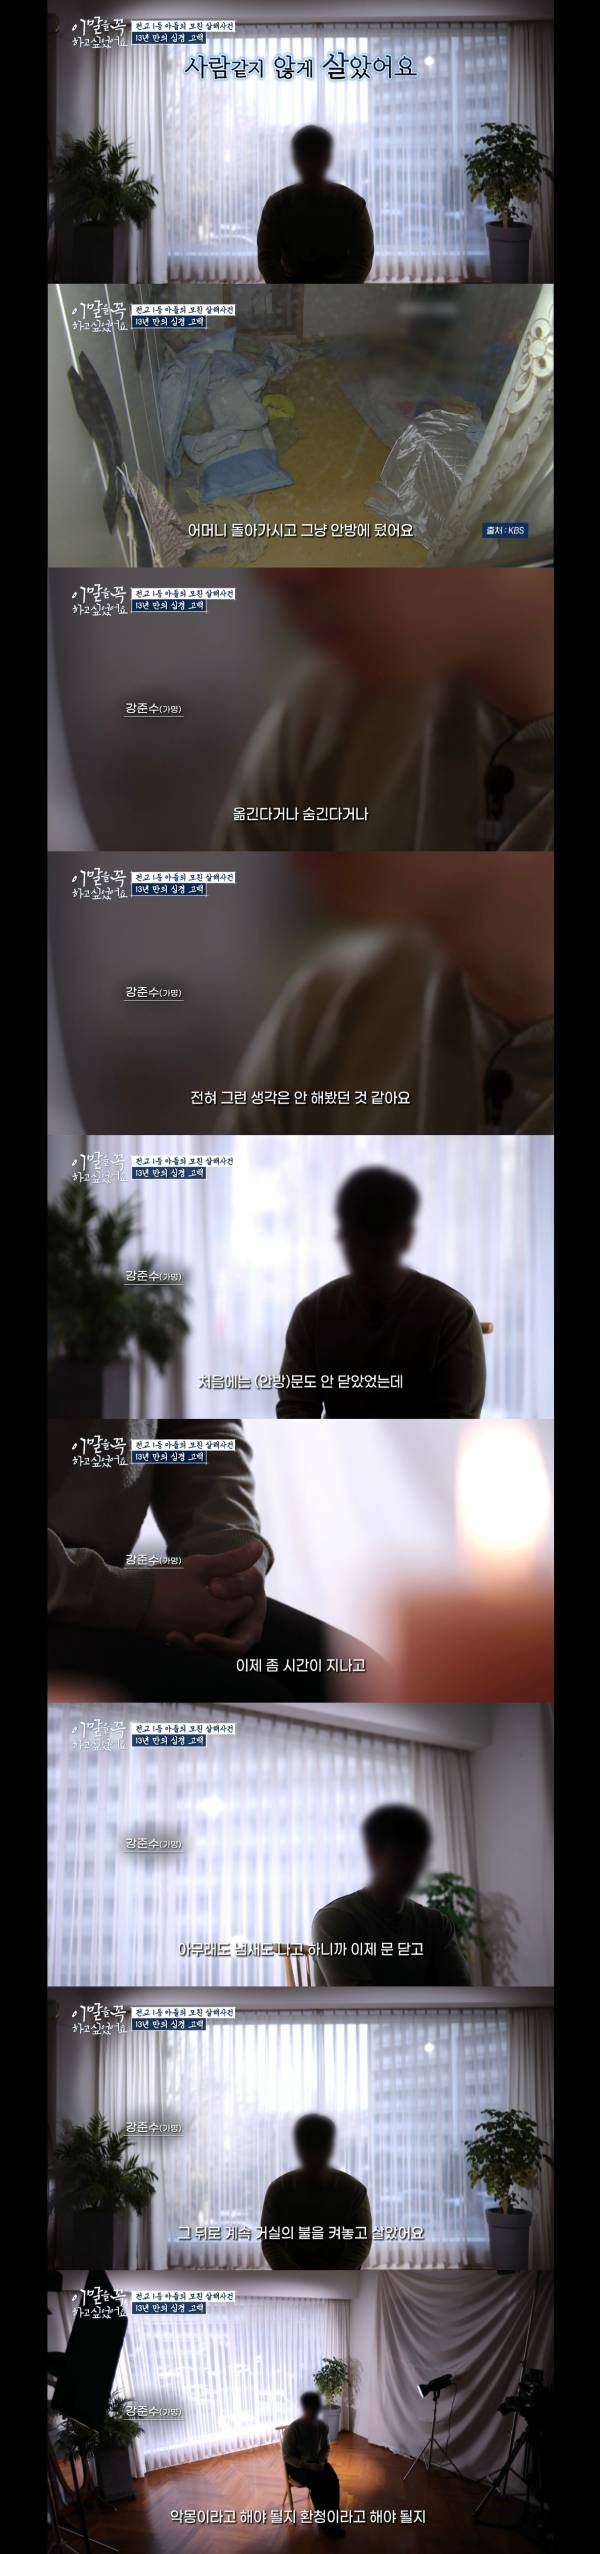 난리났다던 tvN 새 프로그램 살인 가해자 인터뷰 캡쳐.jpg